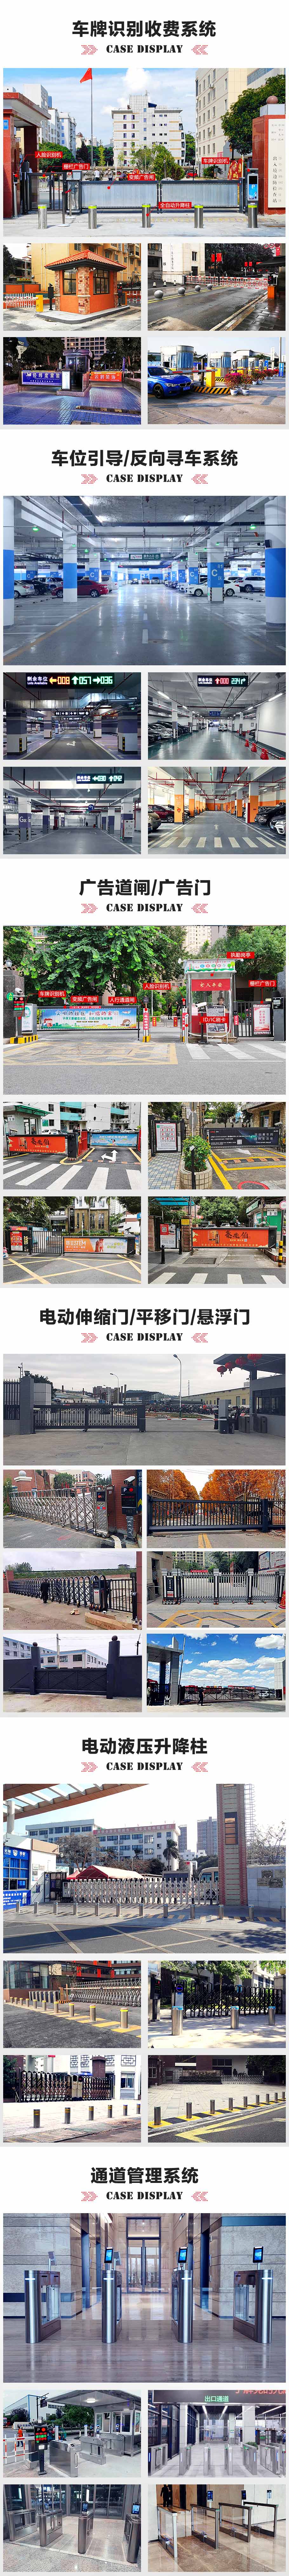 阳江市公安局停车场车牌自动识别系统